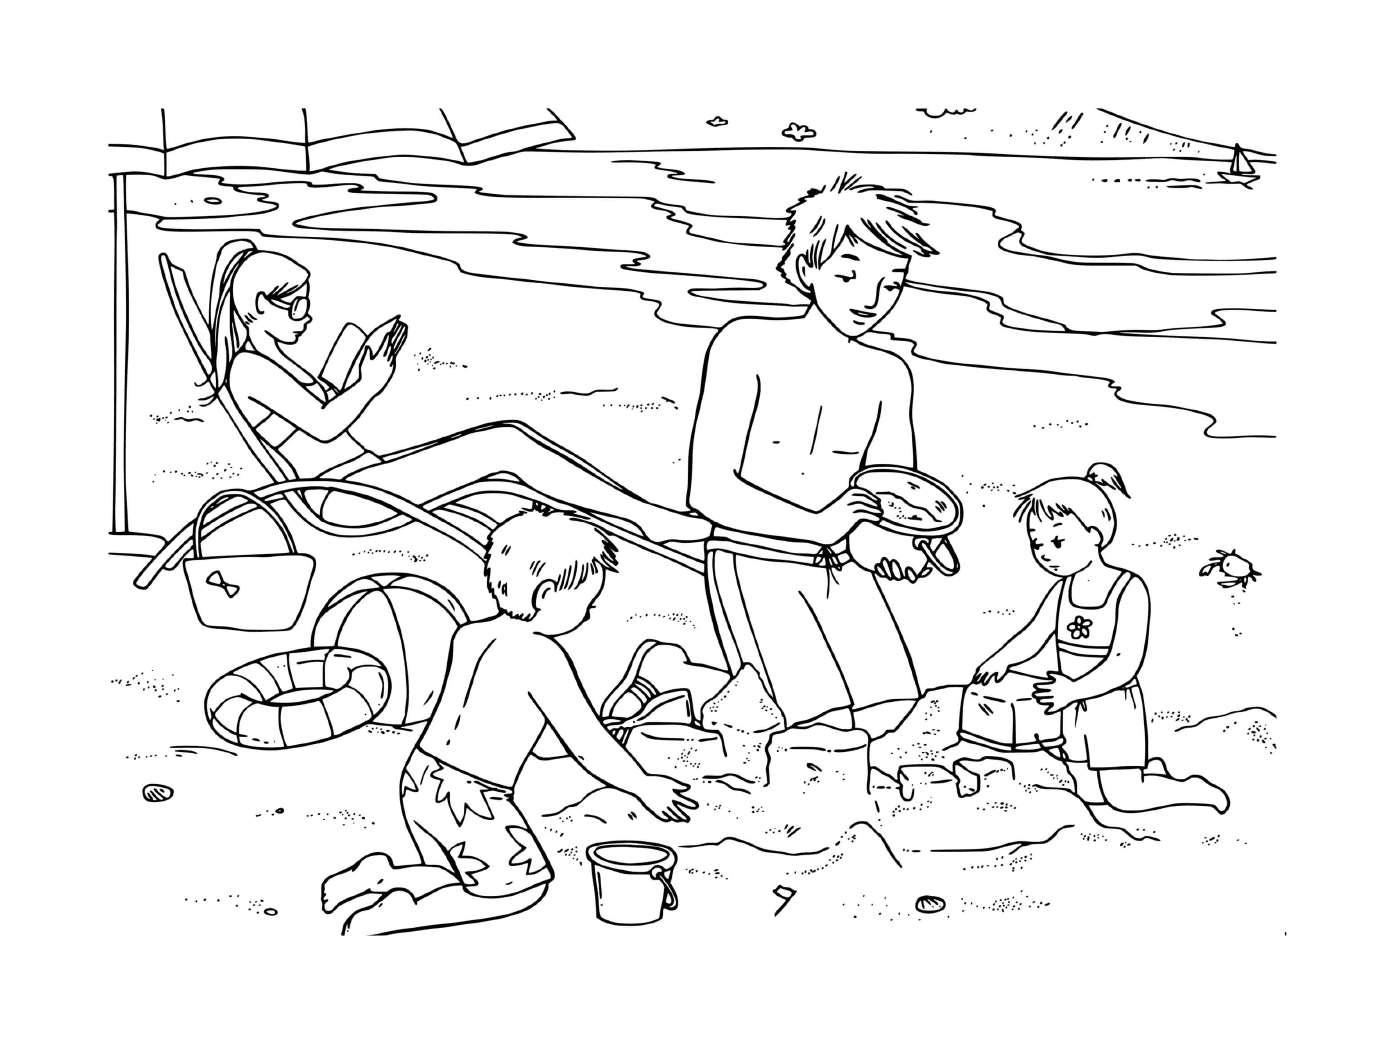   Famille s'amuse sur la plage 